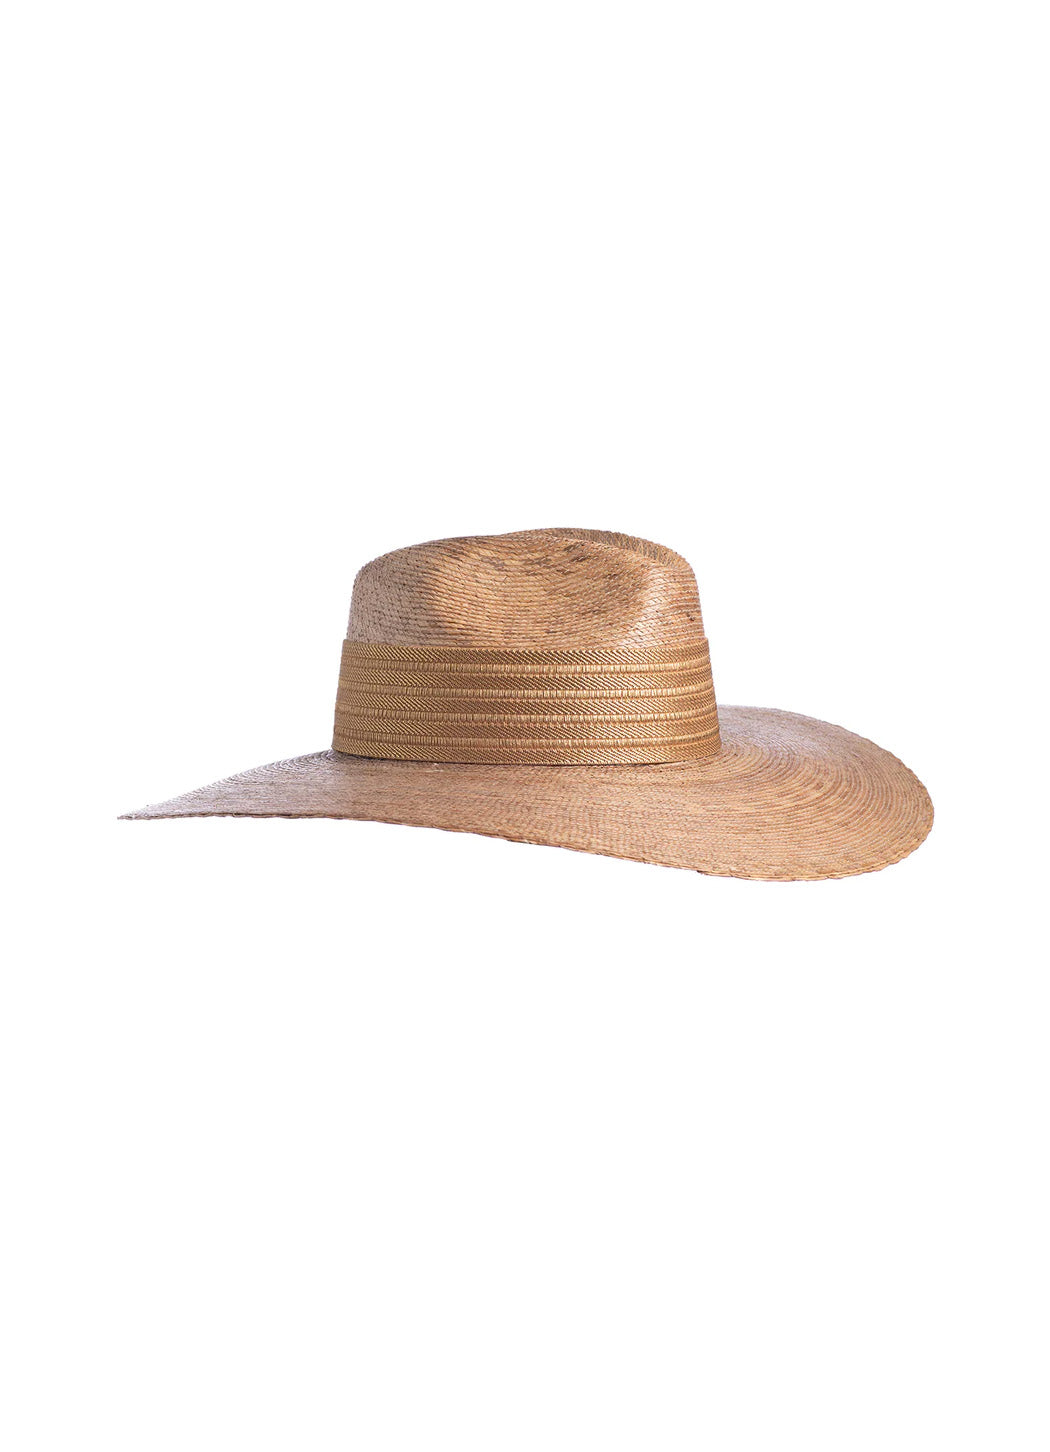 ASN Wide Goldie Straw Hat